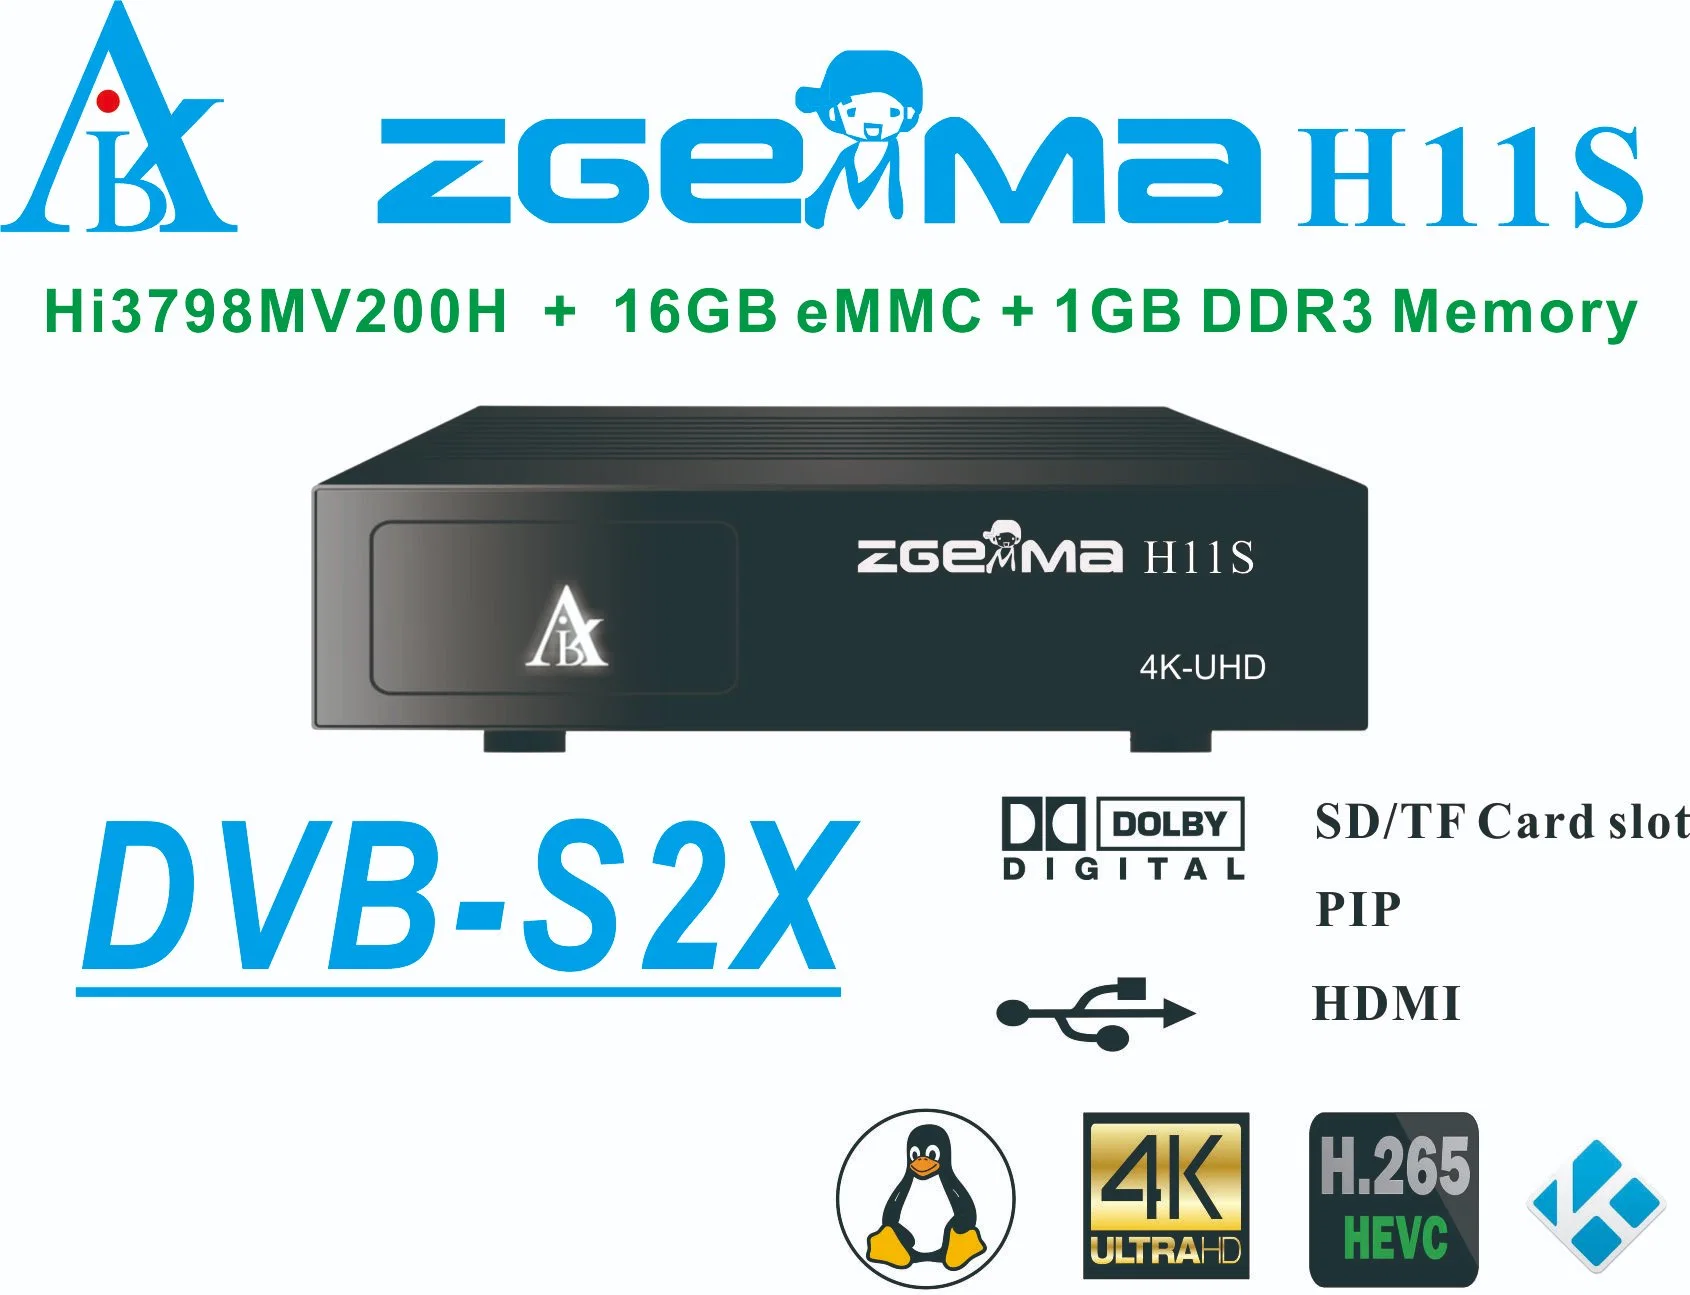 Zgemmah11s 4K- 2160p Операционная система Linux цифровой спутниковый ресивер